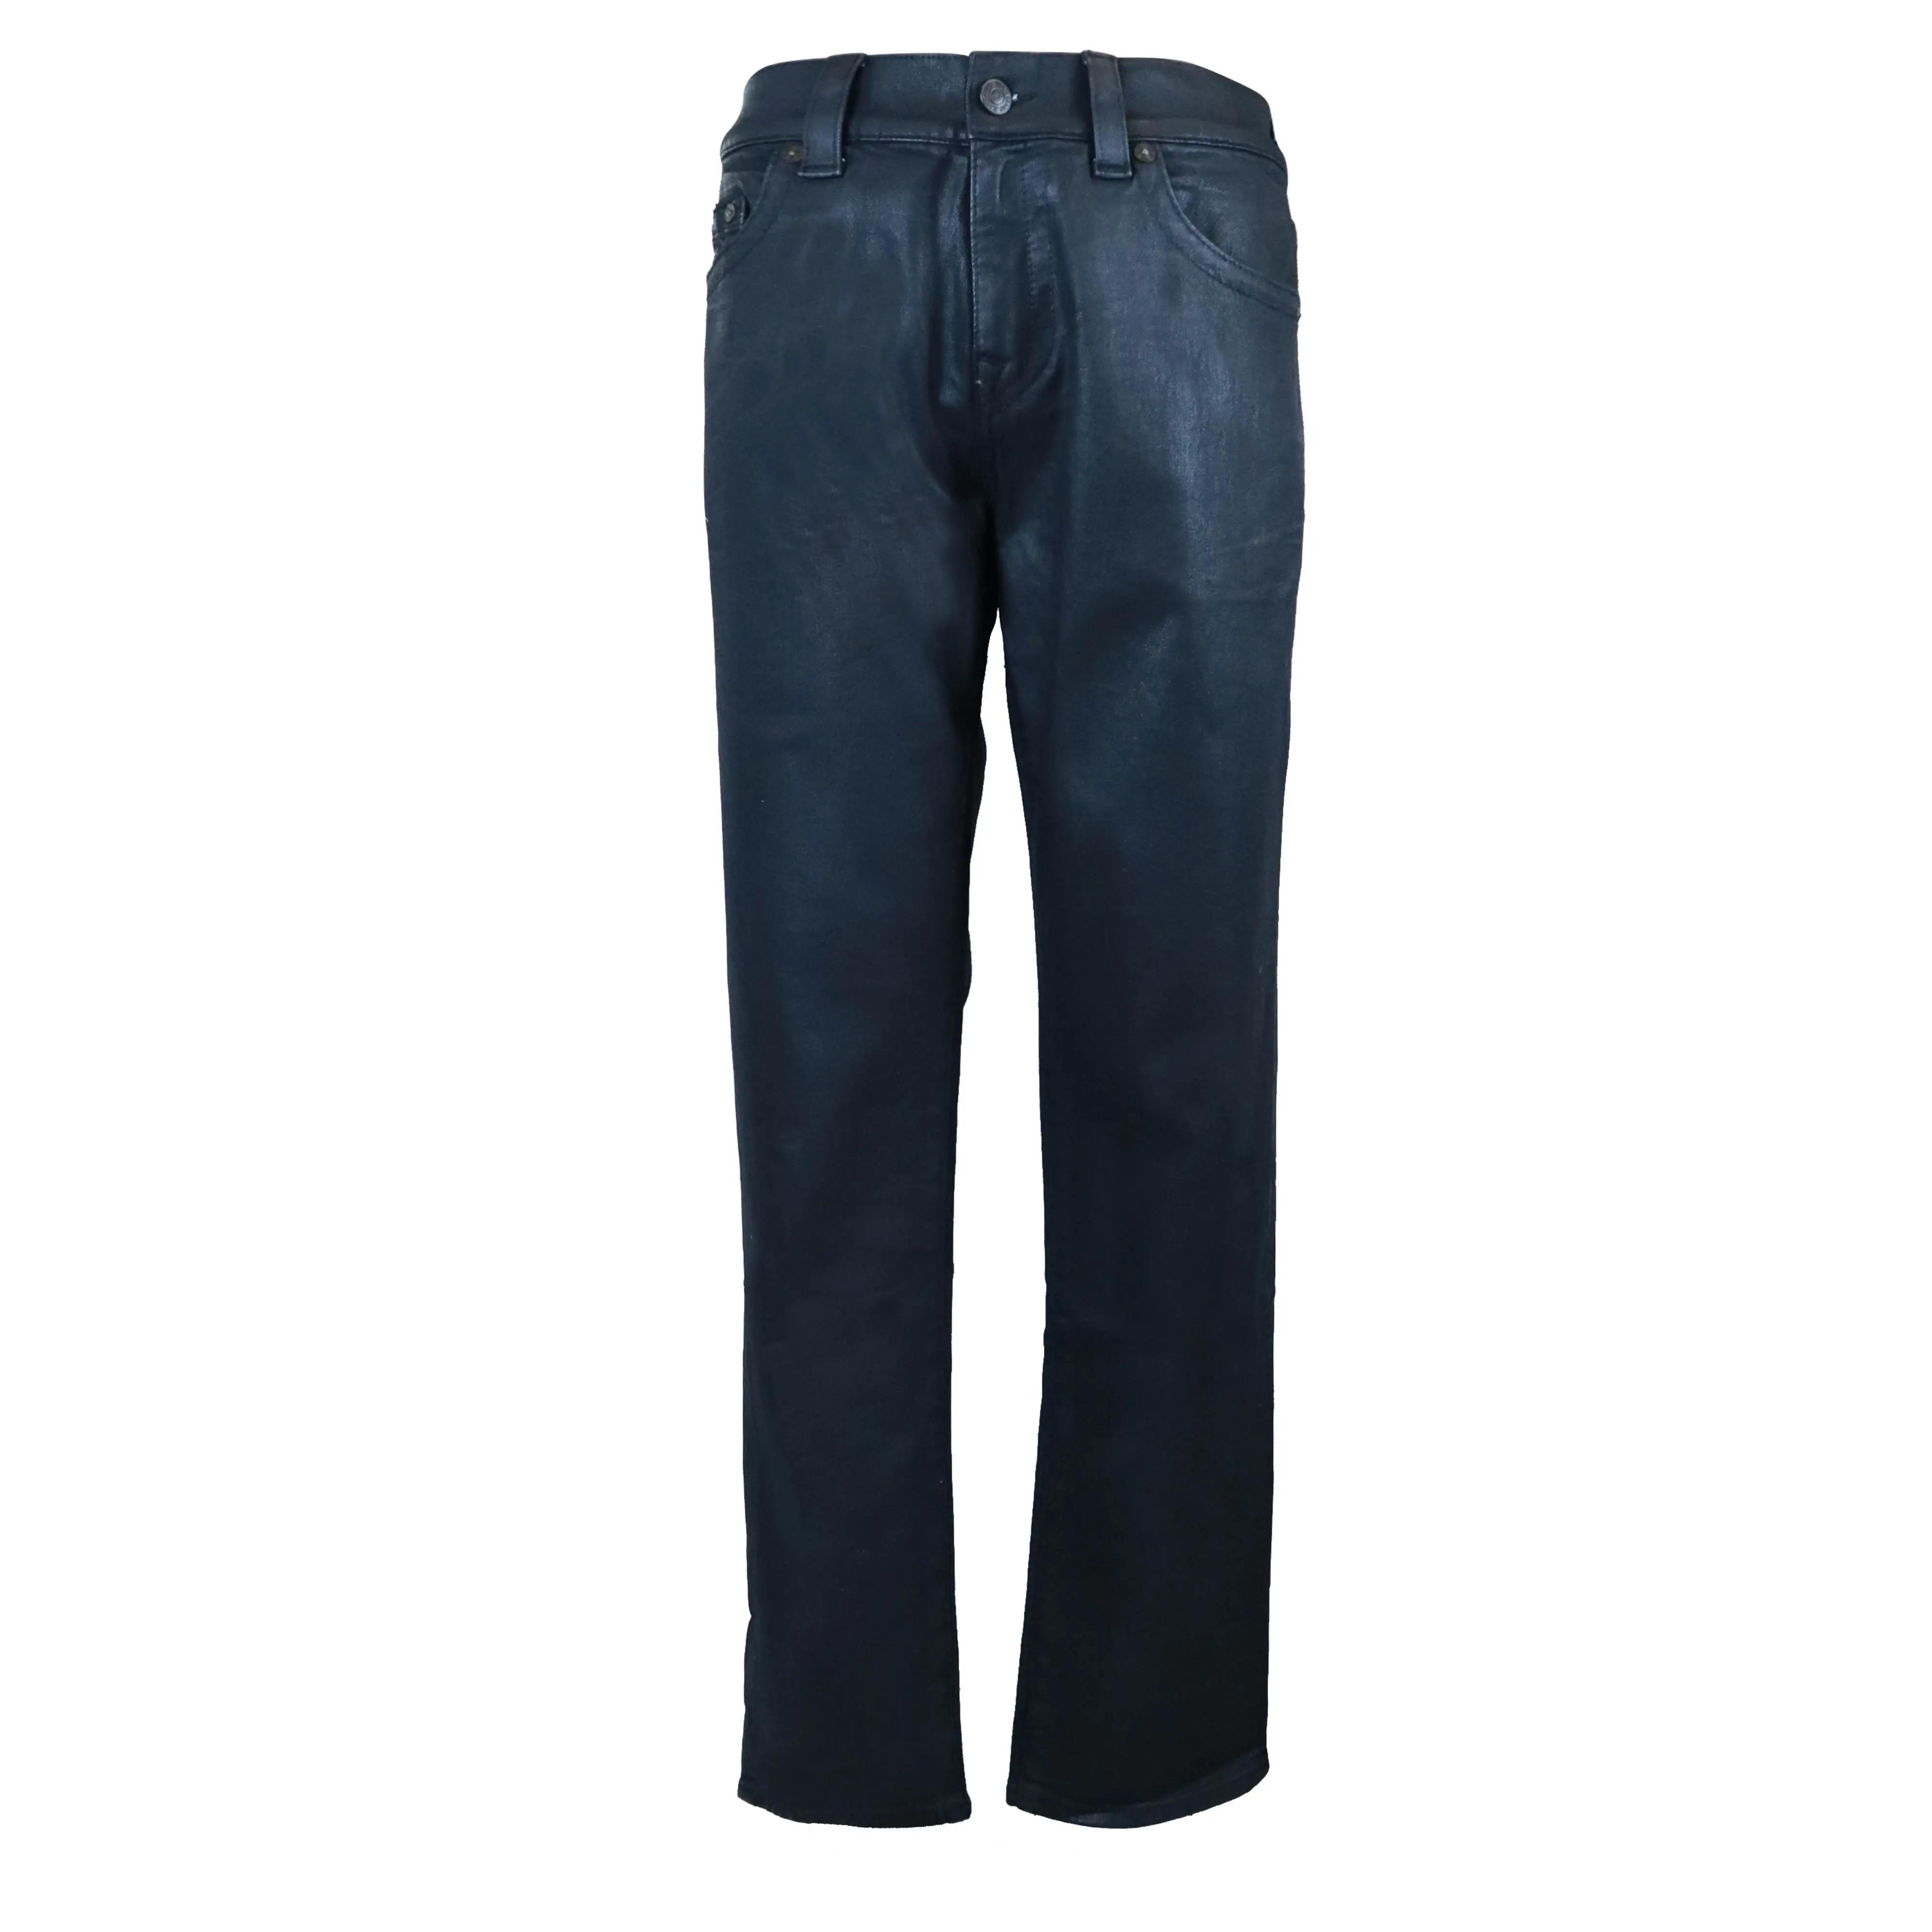 Jeans Wax Vintage Streetwear Jeans Empilés à Bords Bruts Vente en gros Pantalons en Denim Enduits de Cire Pantalons Skinny Flare Jeans Hommes